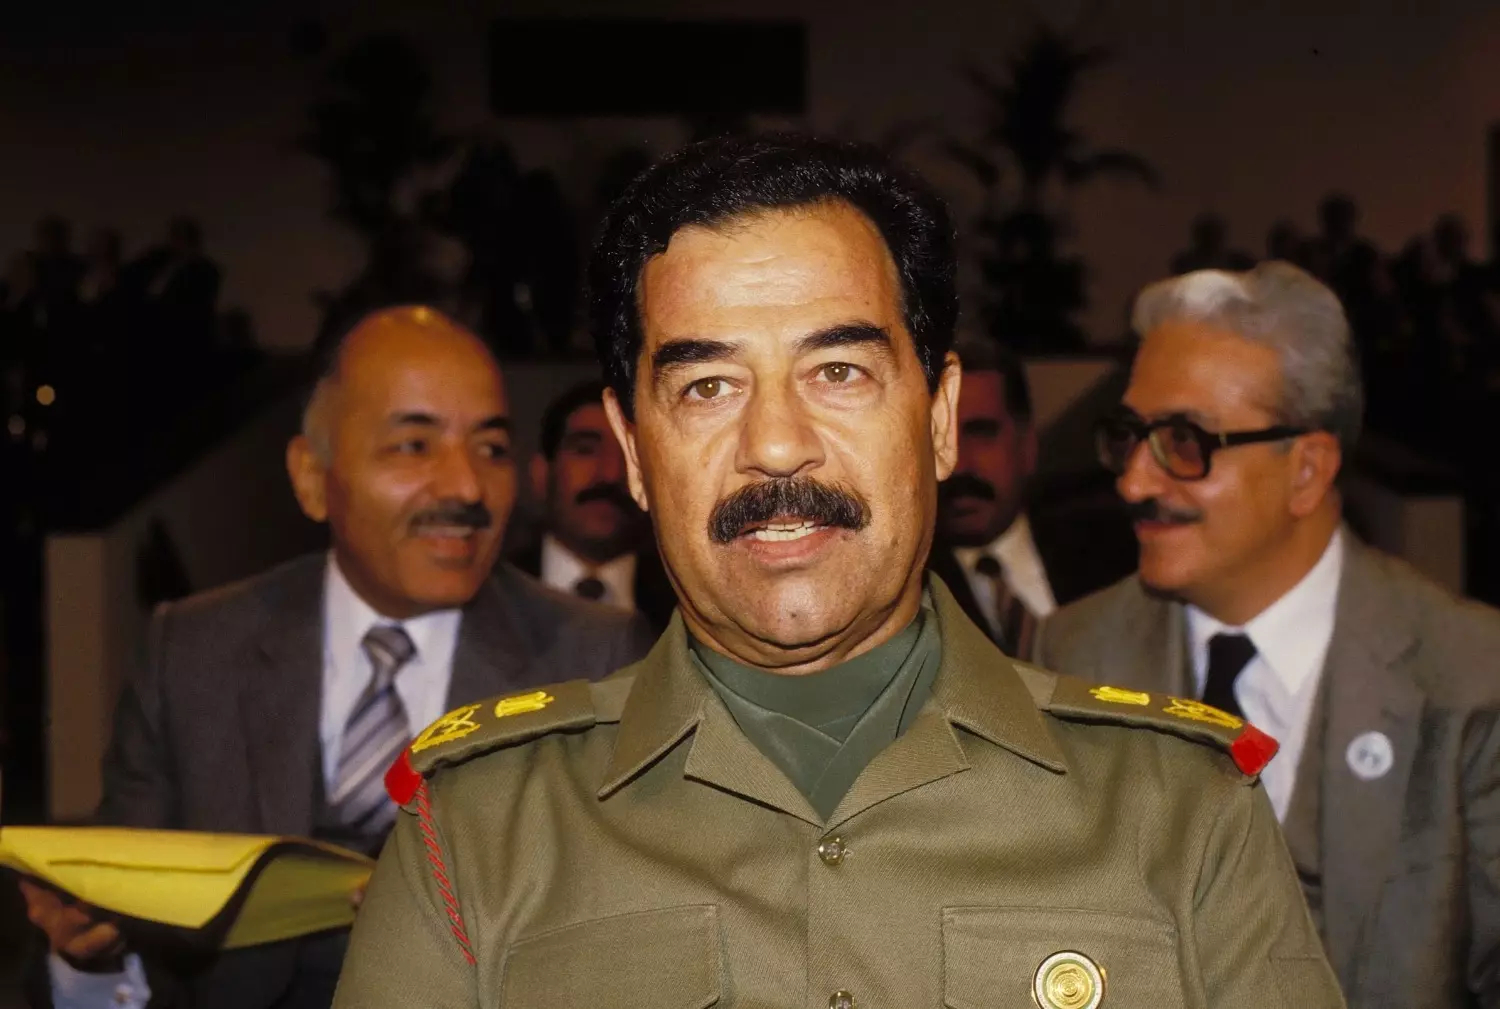 Казнь Саддама Хусейна привела к религиозному расколу и созданию террористических группировок